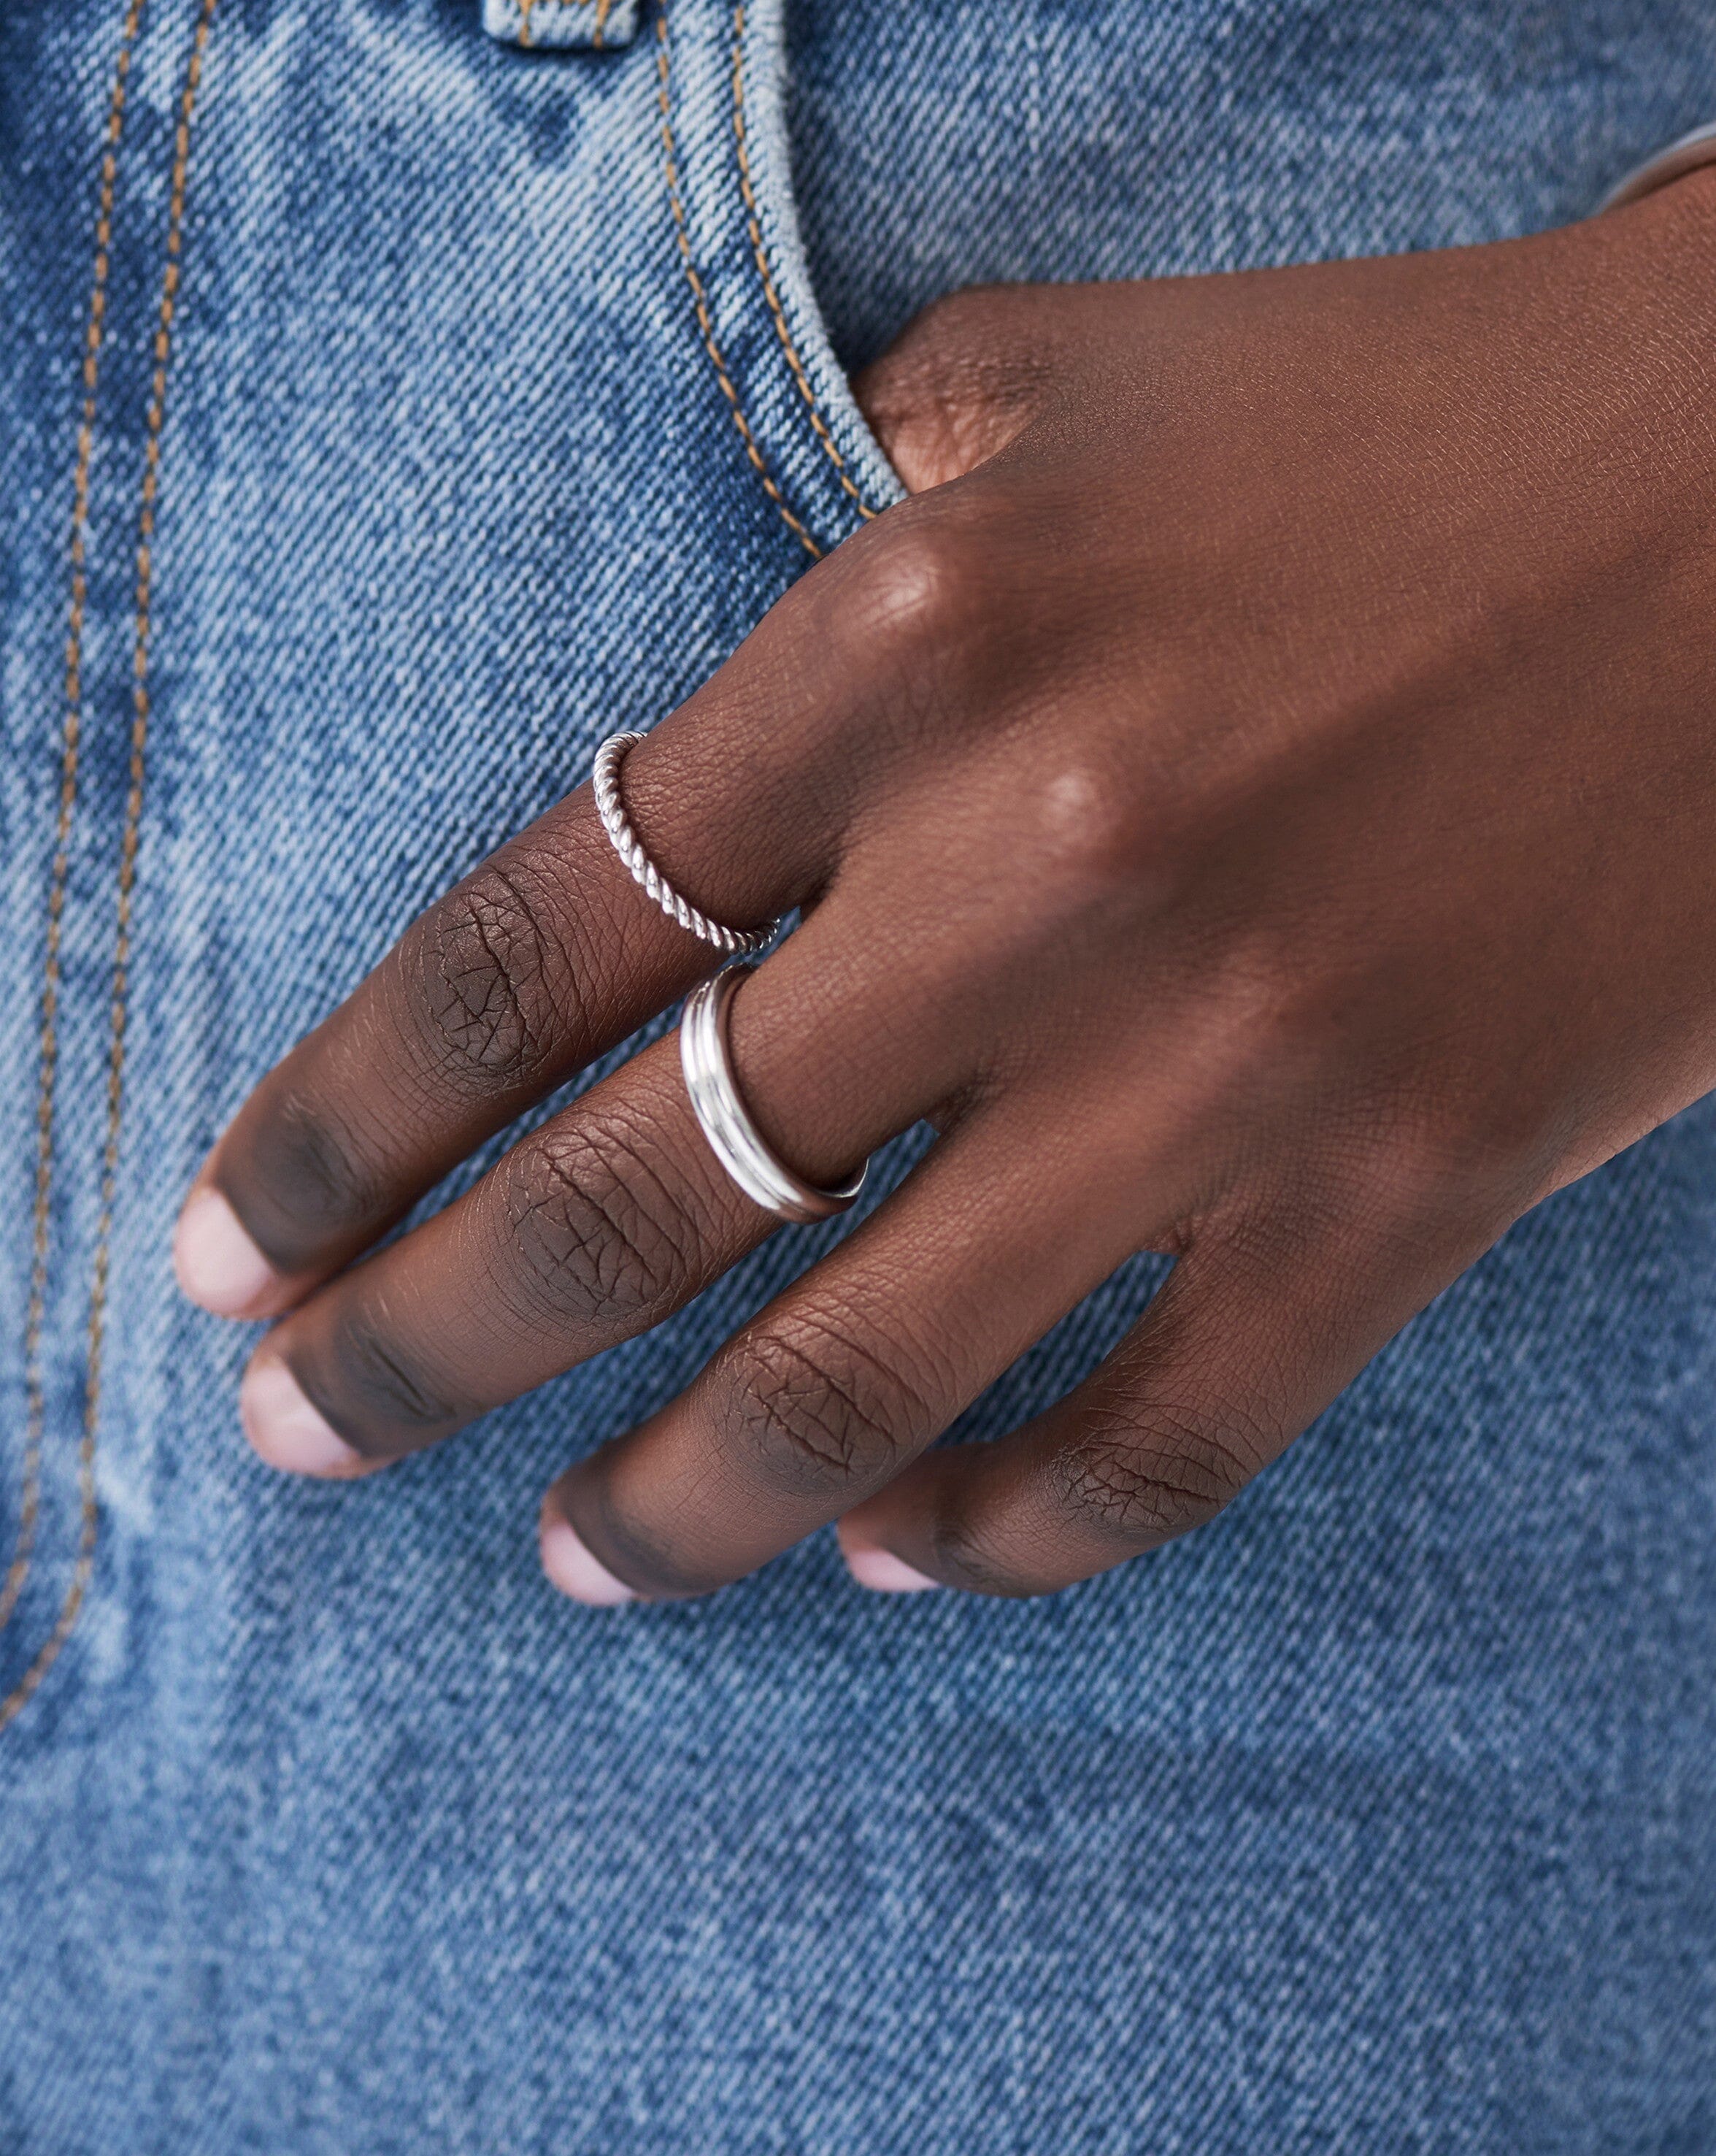 Flux Ring | Sterling Silver Rings Missoma 